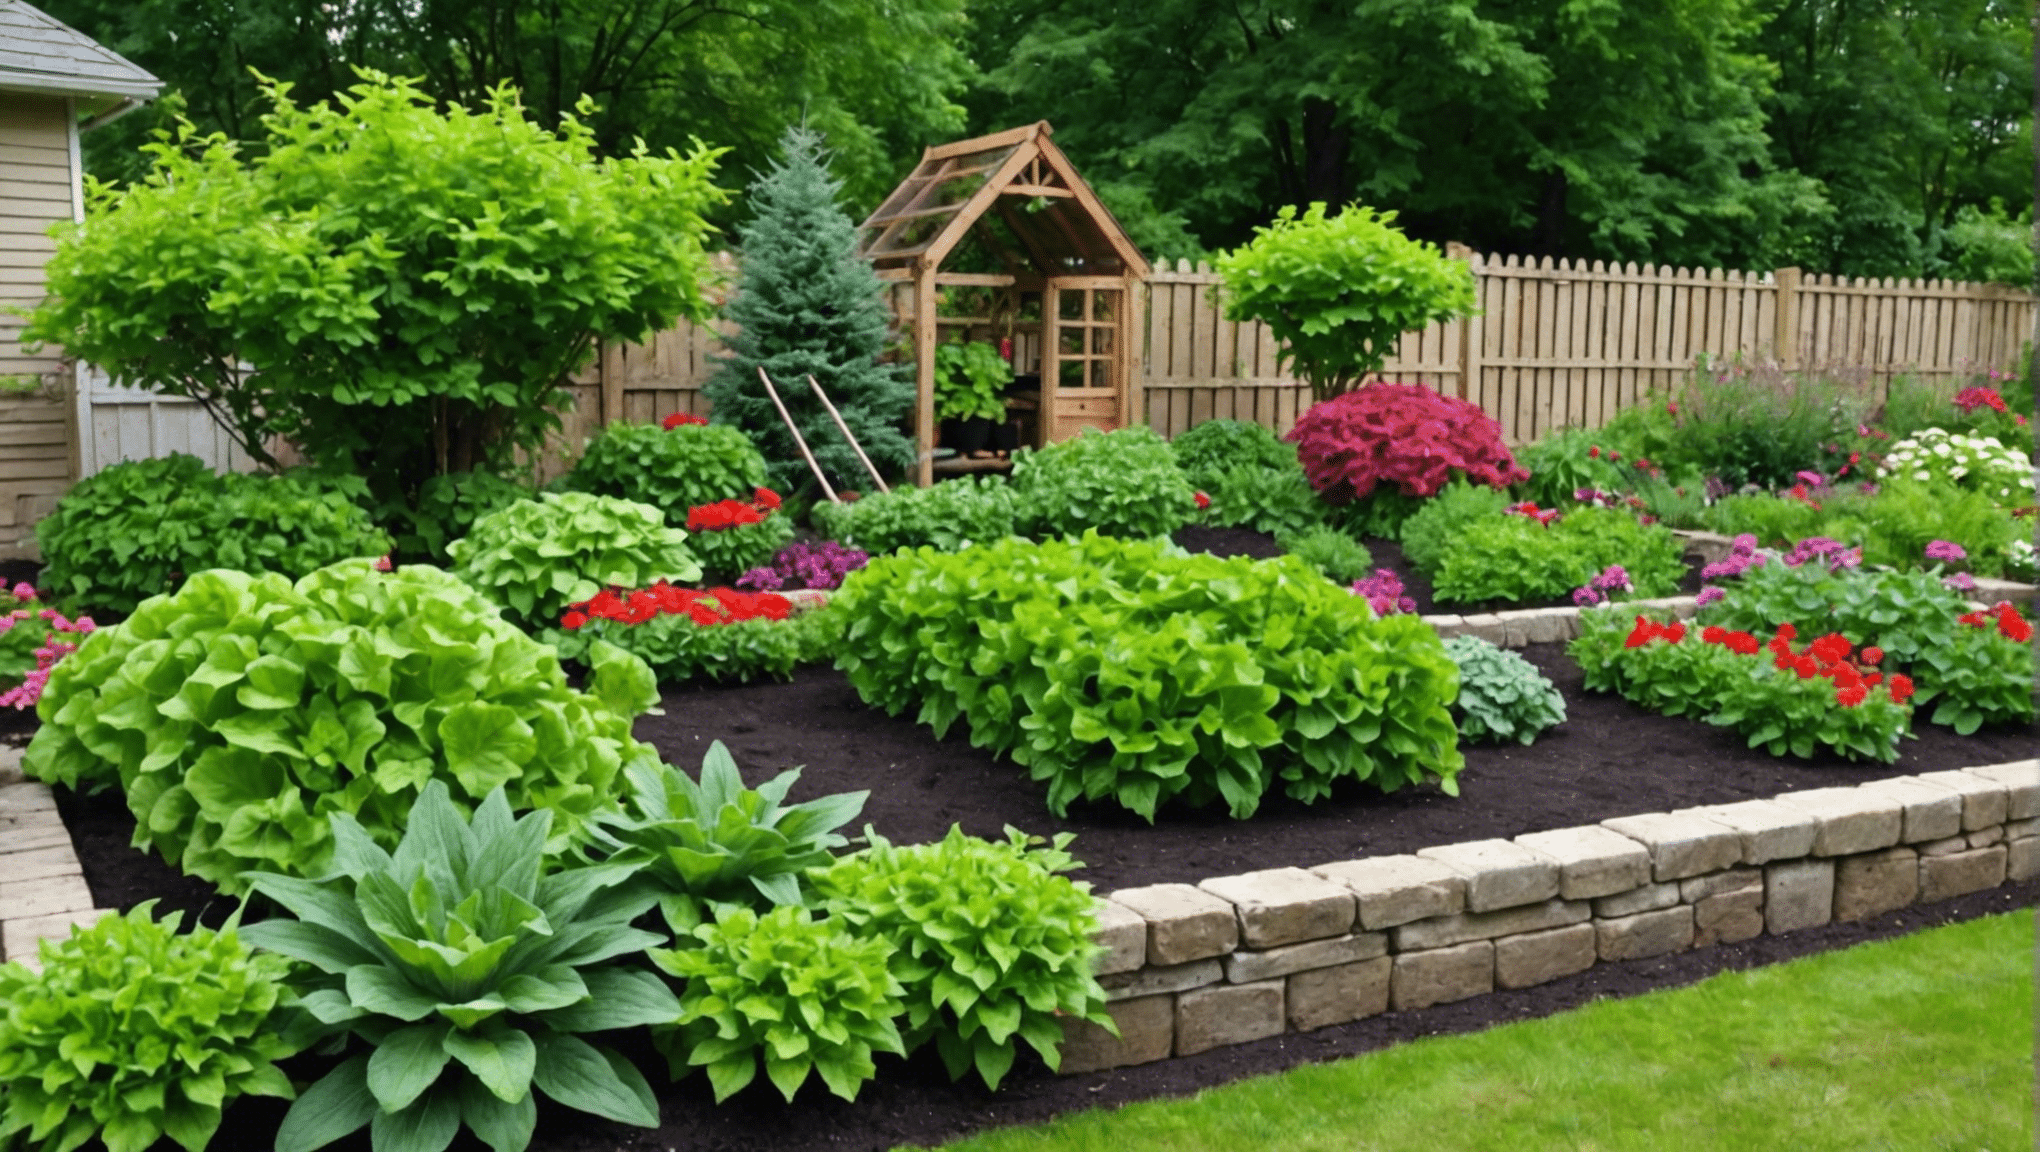 odkrijte praktične in proračunu prijazne nasvete za vrtnarjenje zelenjave v vašem prostoru z našimi cenovno ugodnimi idejami za vrtnarjenje. začnite ustvarjati uspešen in ekonomičen zelenjavni vrt že danes.